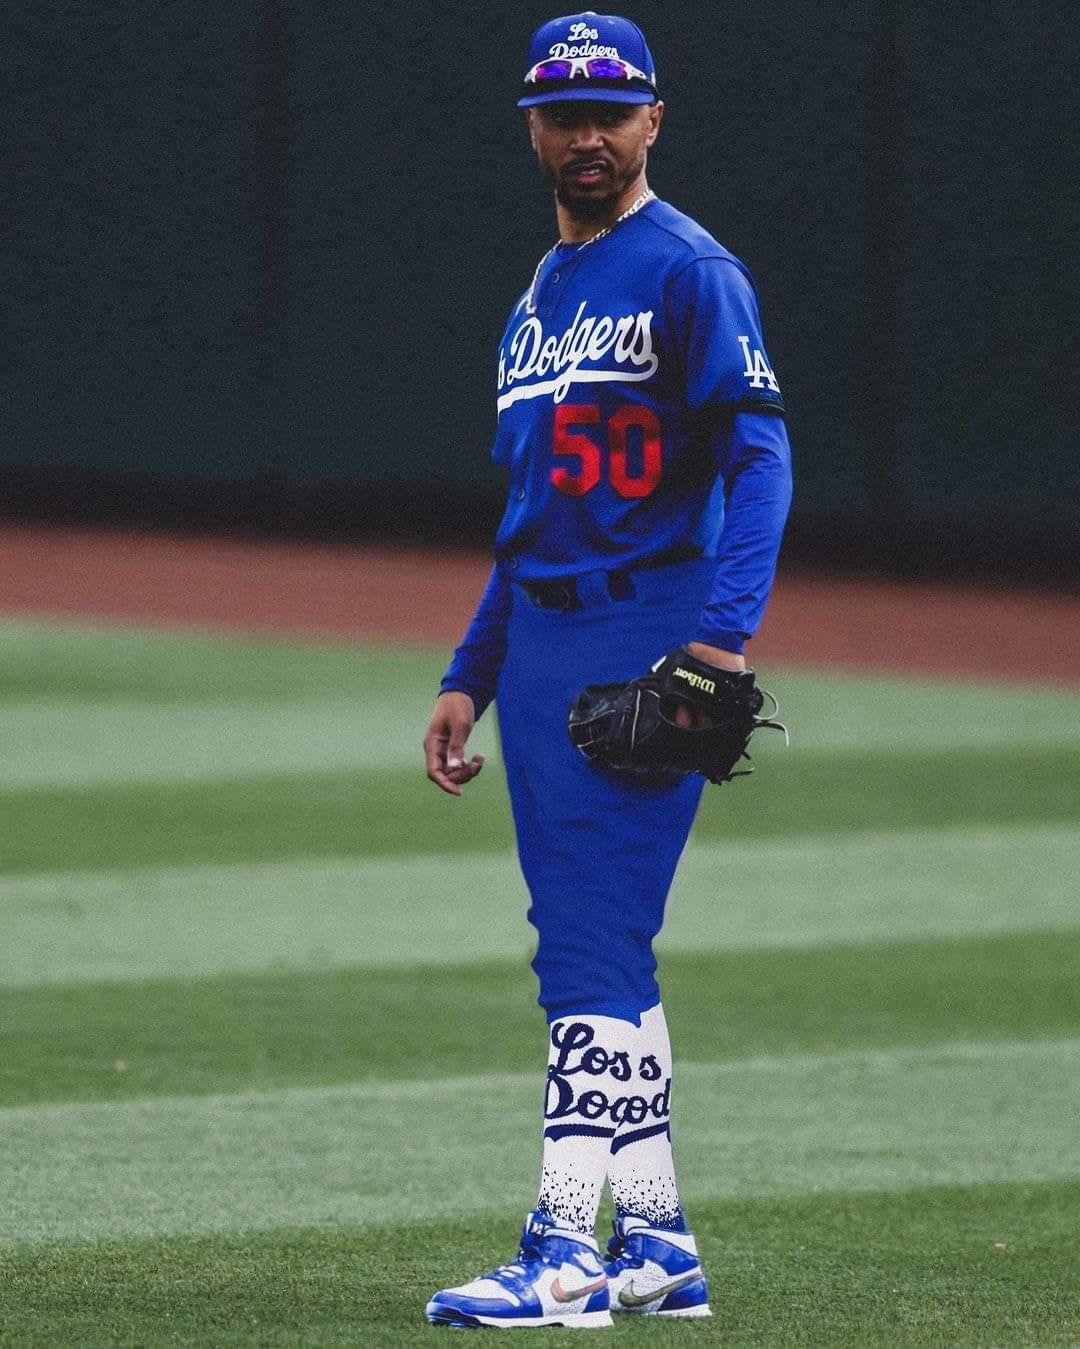 El uniforme digno de un equipo - Dodgers de Los Ángeles